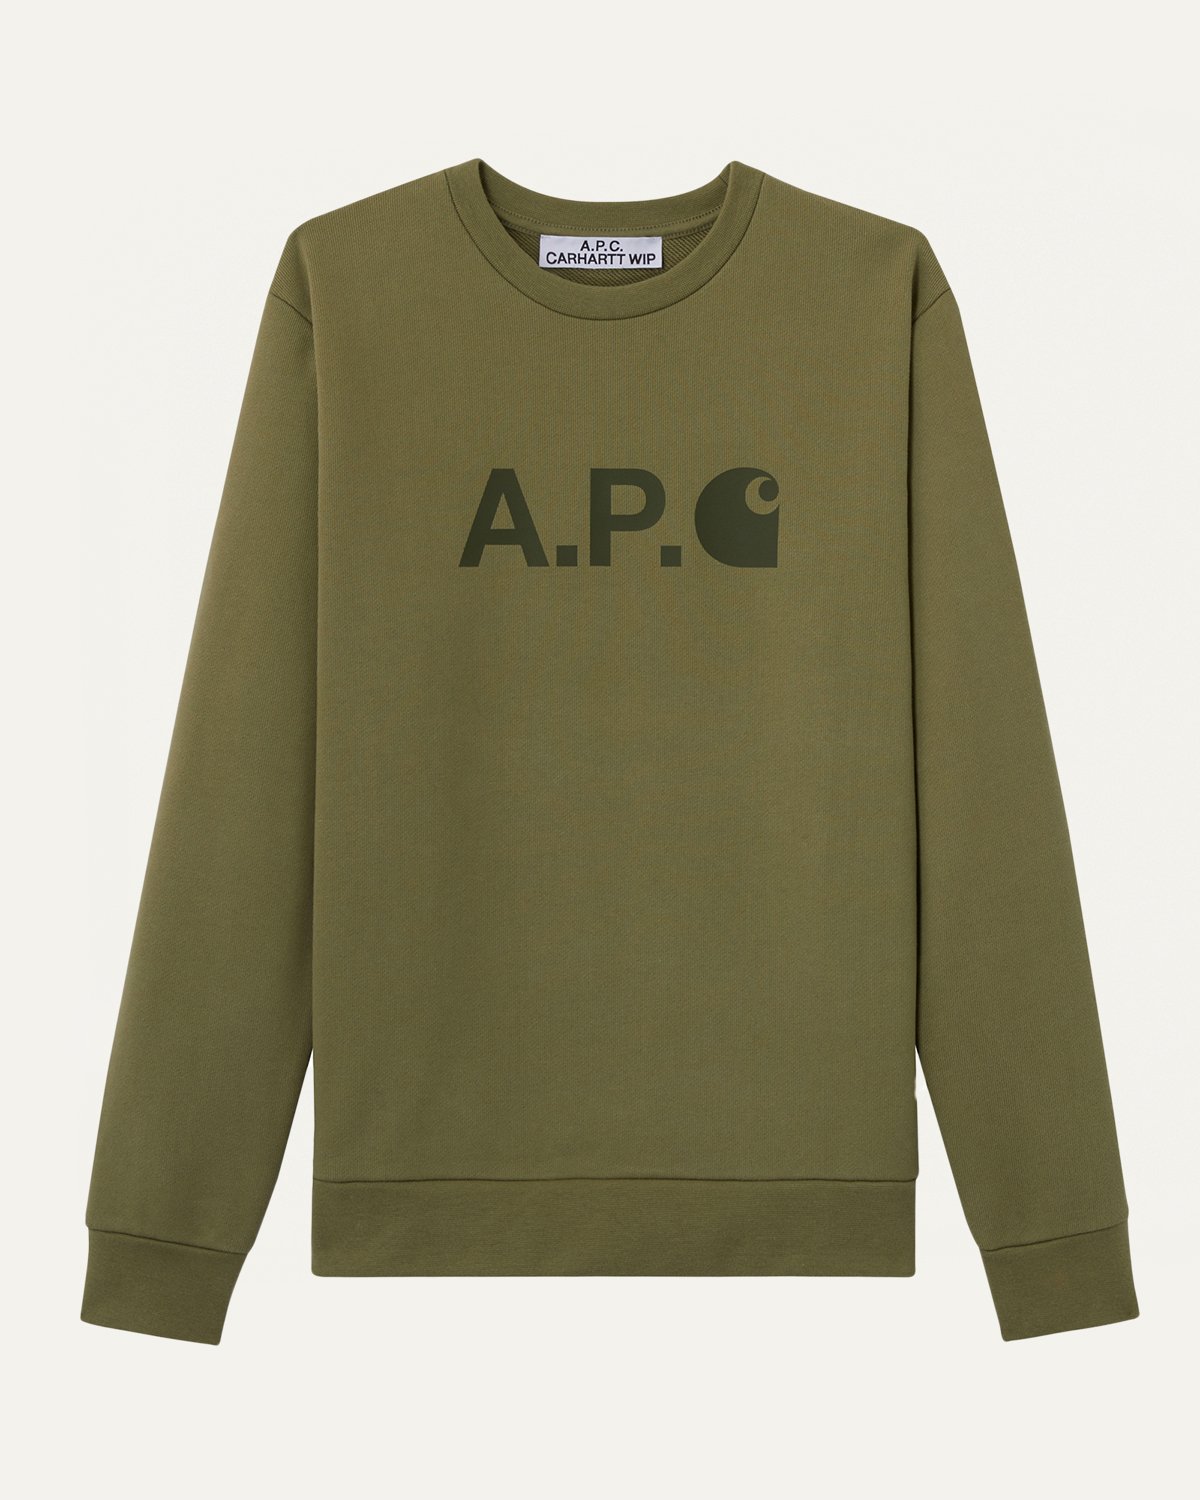 A.P.C. x Carhartt WIP - Ice Sweatshirt - Sweatshirts - Green - Image 1